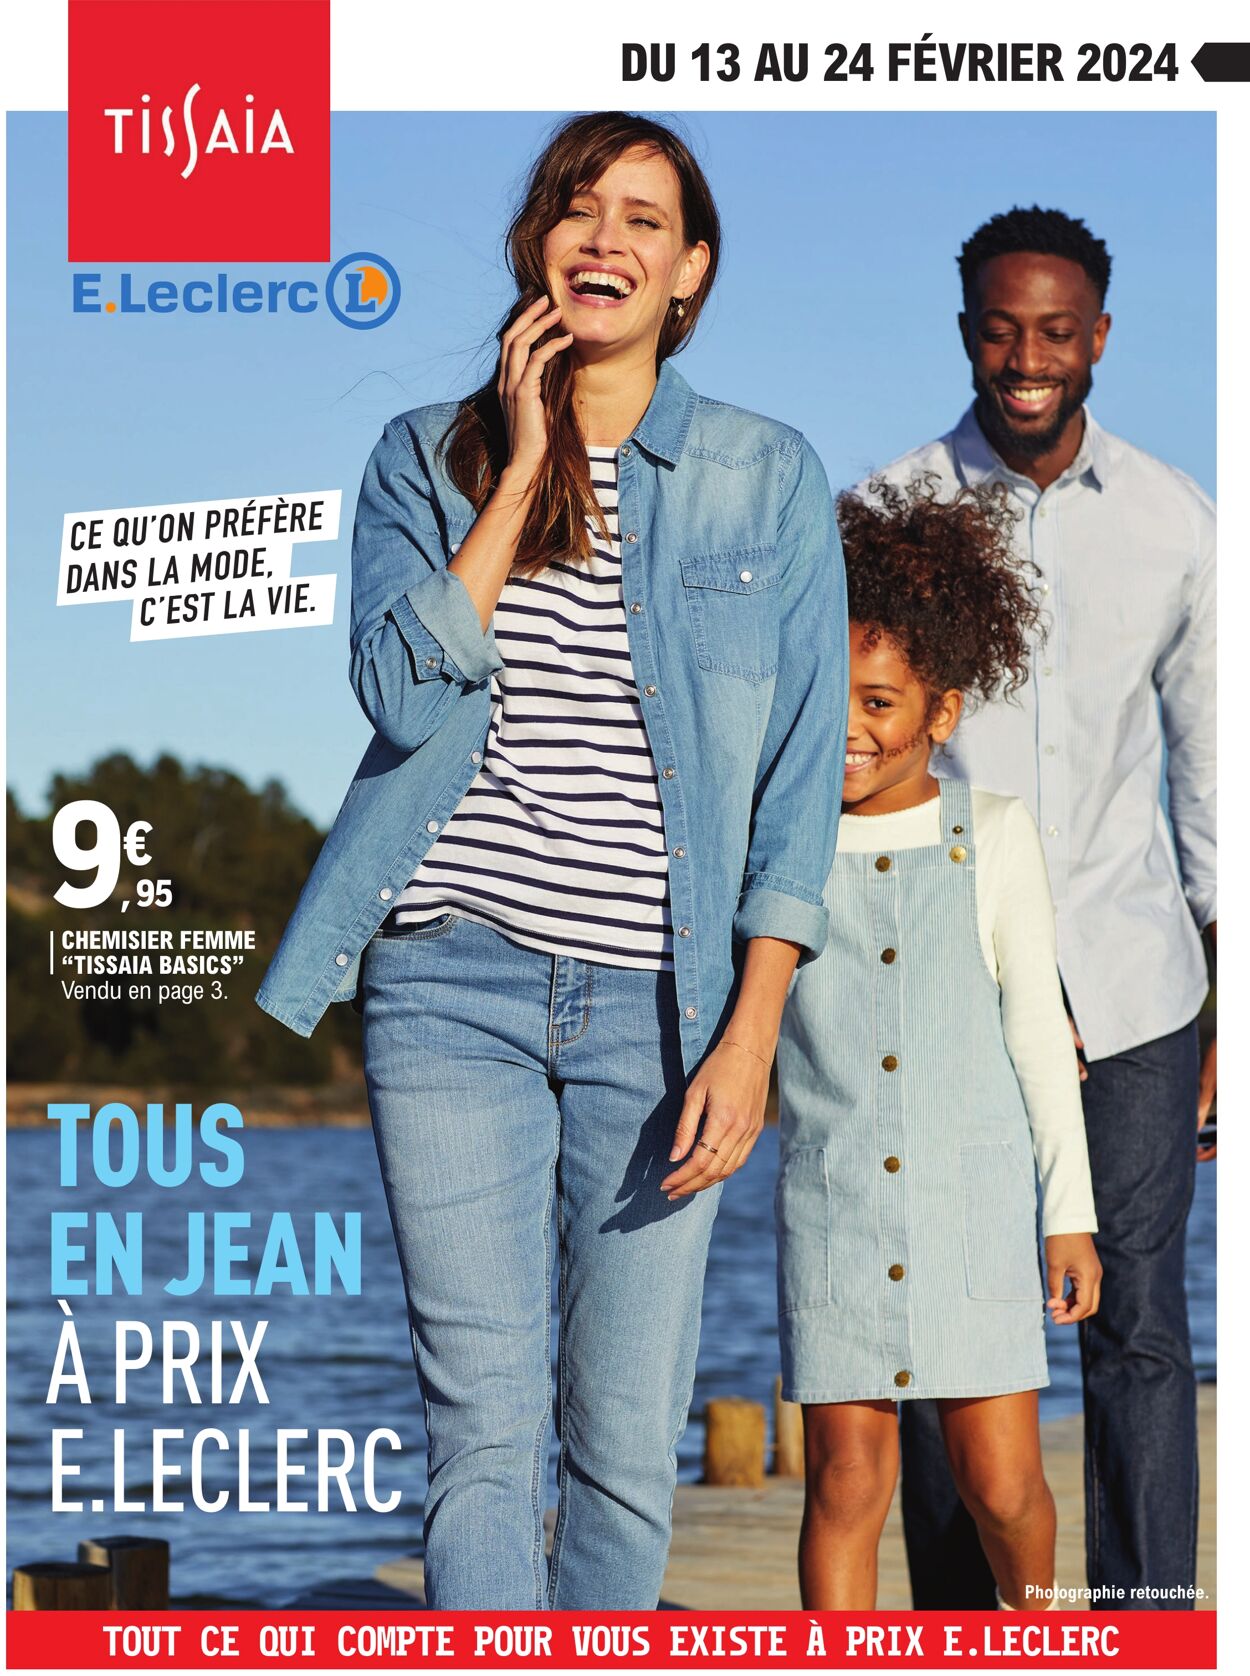 Catalogue E. Leclerc - Tous en jean 13 févr. 2024 - 24 févr. 2024